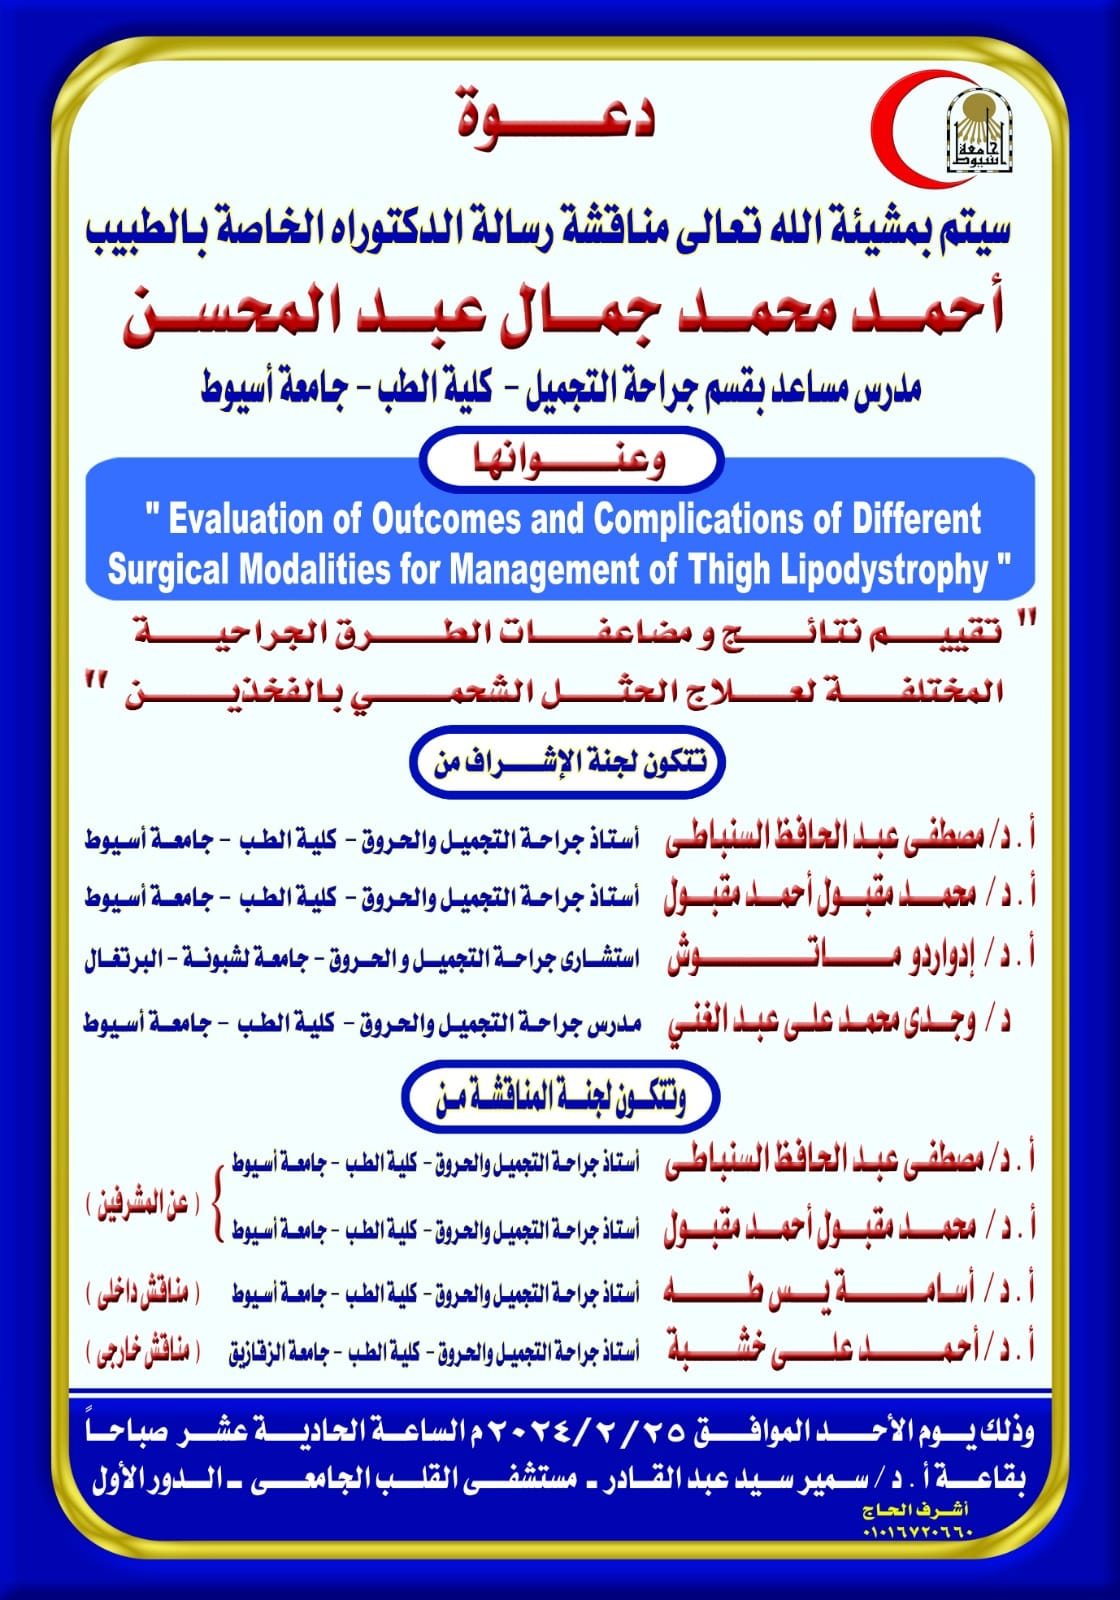 Seminar by Dr. Ahmed Mohamed Gamal Abdel Mohsen